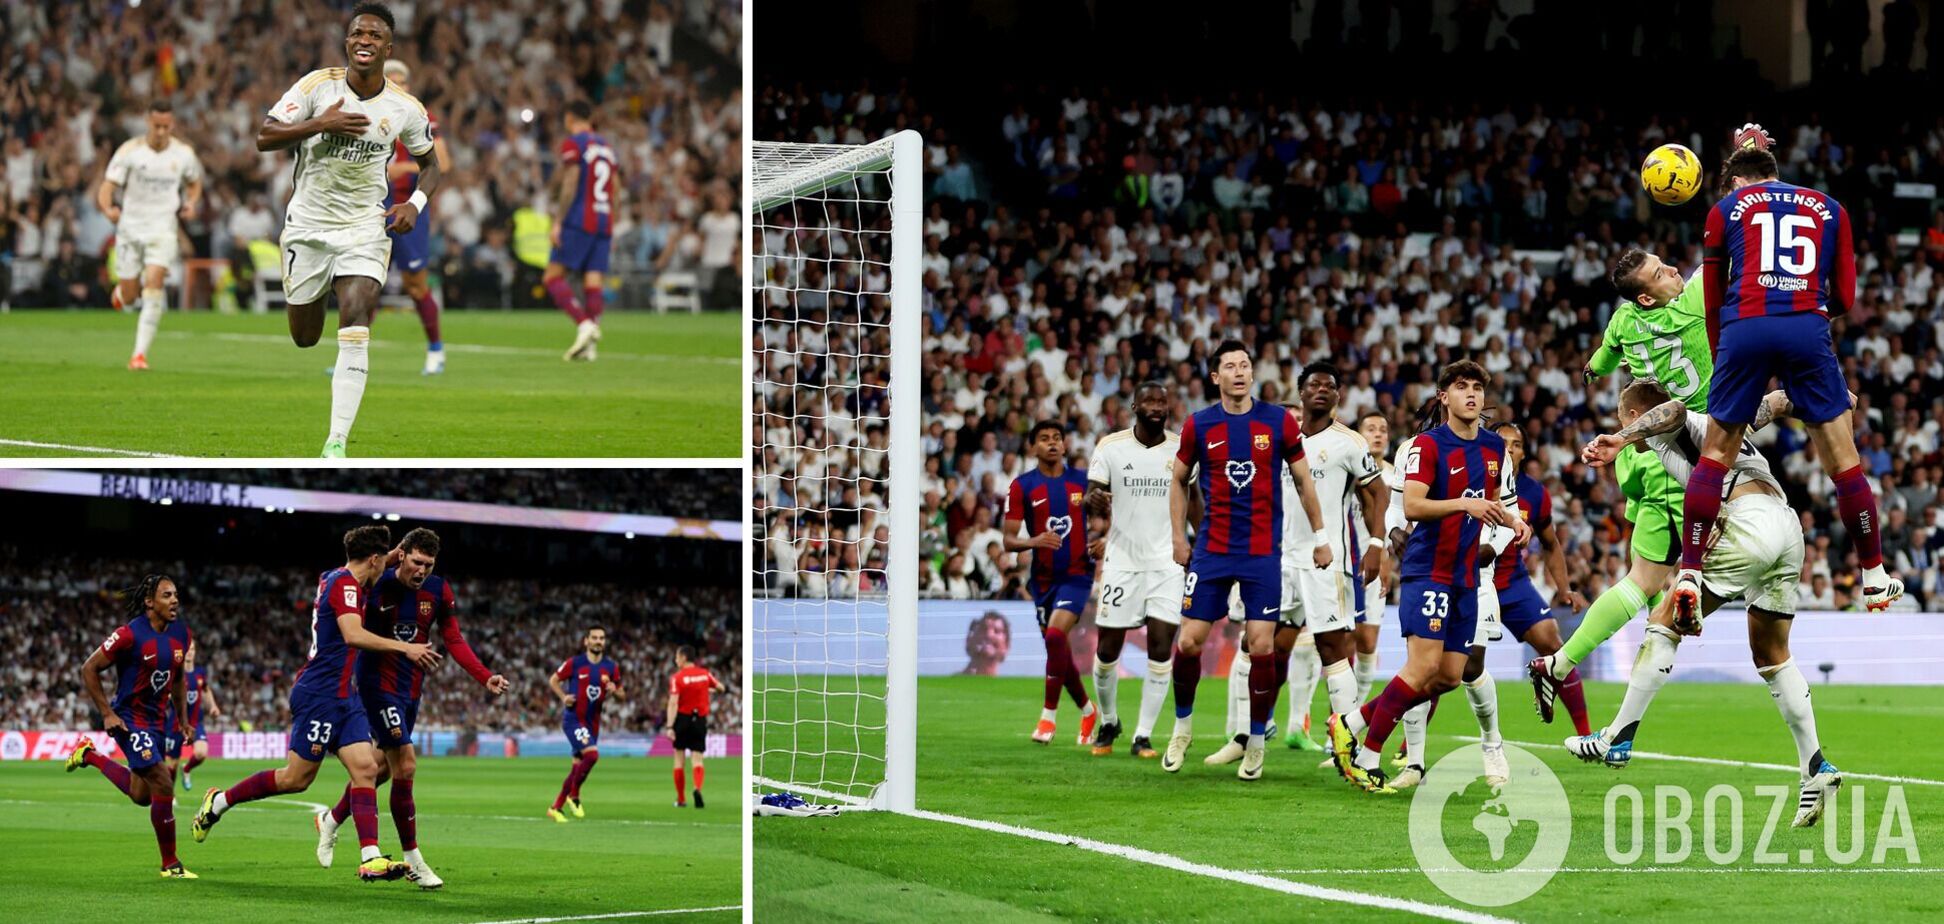 'Реал' на последней минуте вырвал победу у 'Барселоны' в Эль-класико. Видео